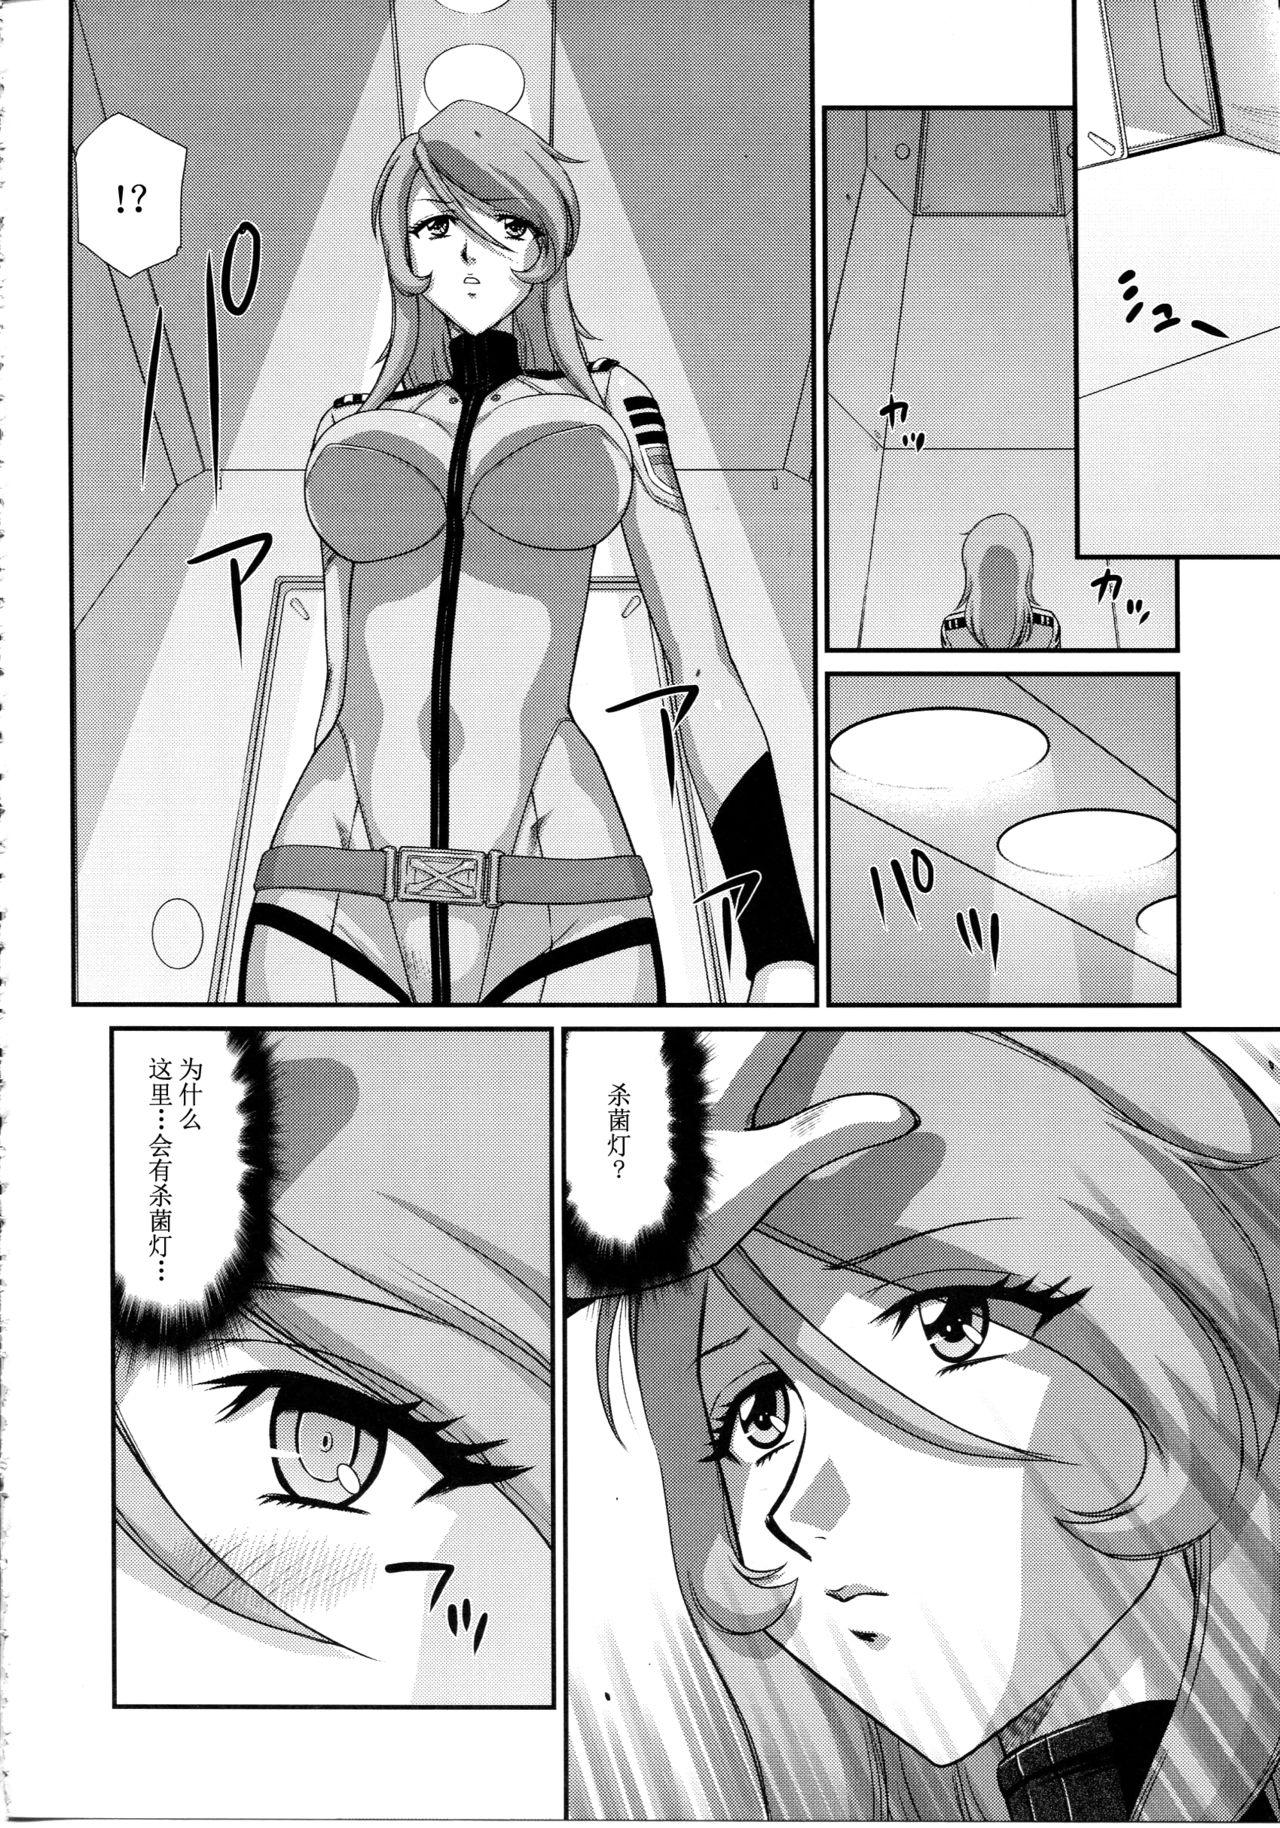 Xxx Yuki no Shizuku - Space battleship yamato 2199 Cumfacial - Page 13